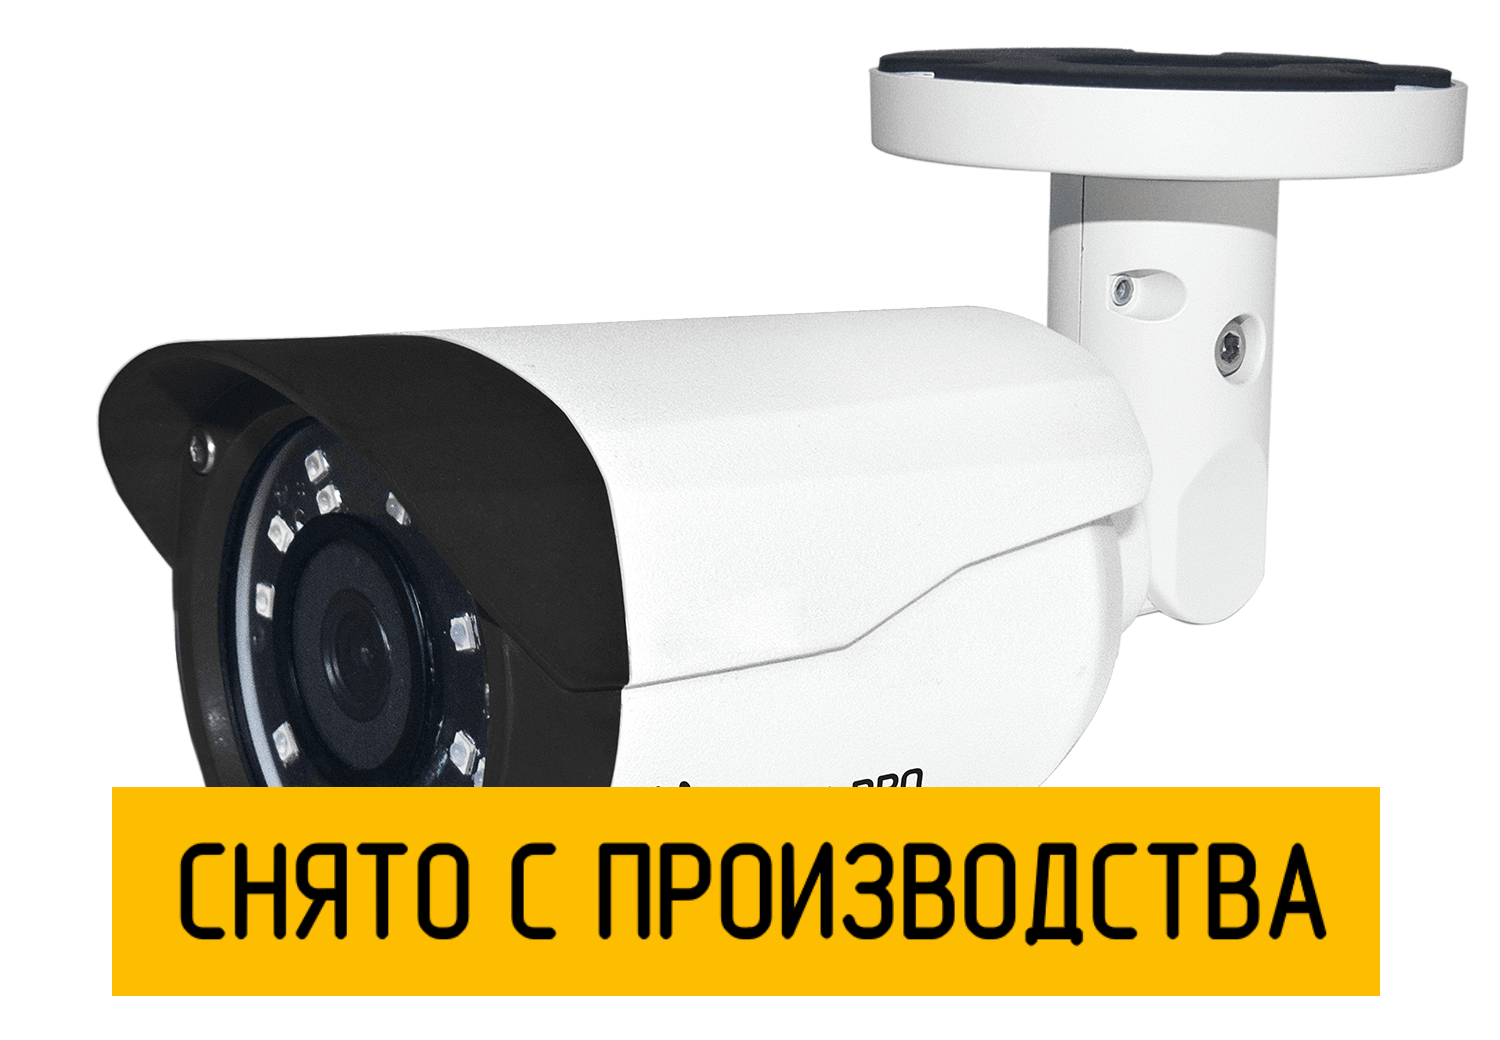 Цилиндрическая IP камера StreetCAM.net 1080m